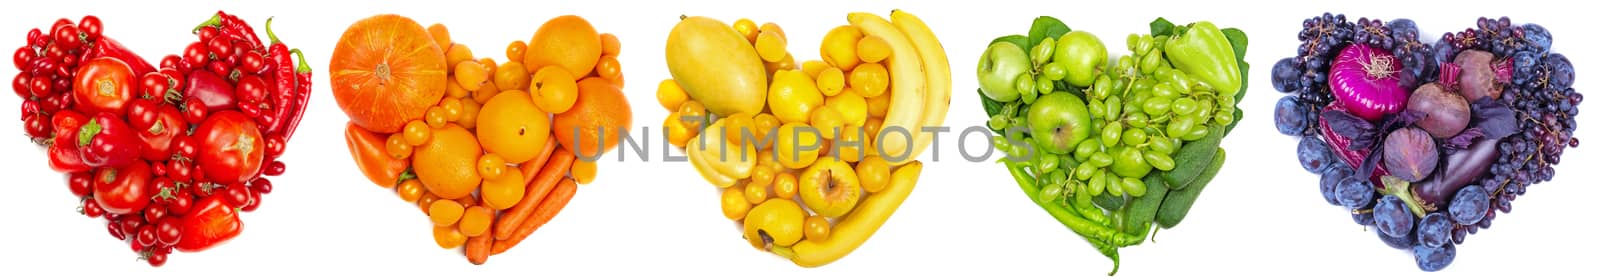 Fruit and vegetable heart on white by destillat